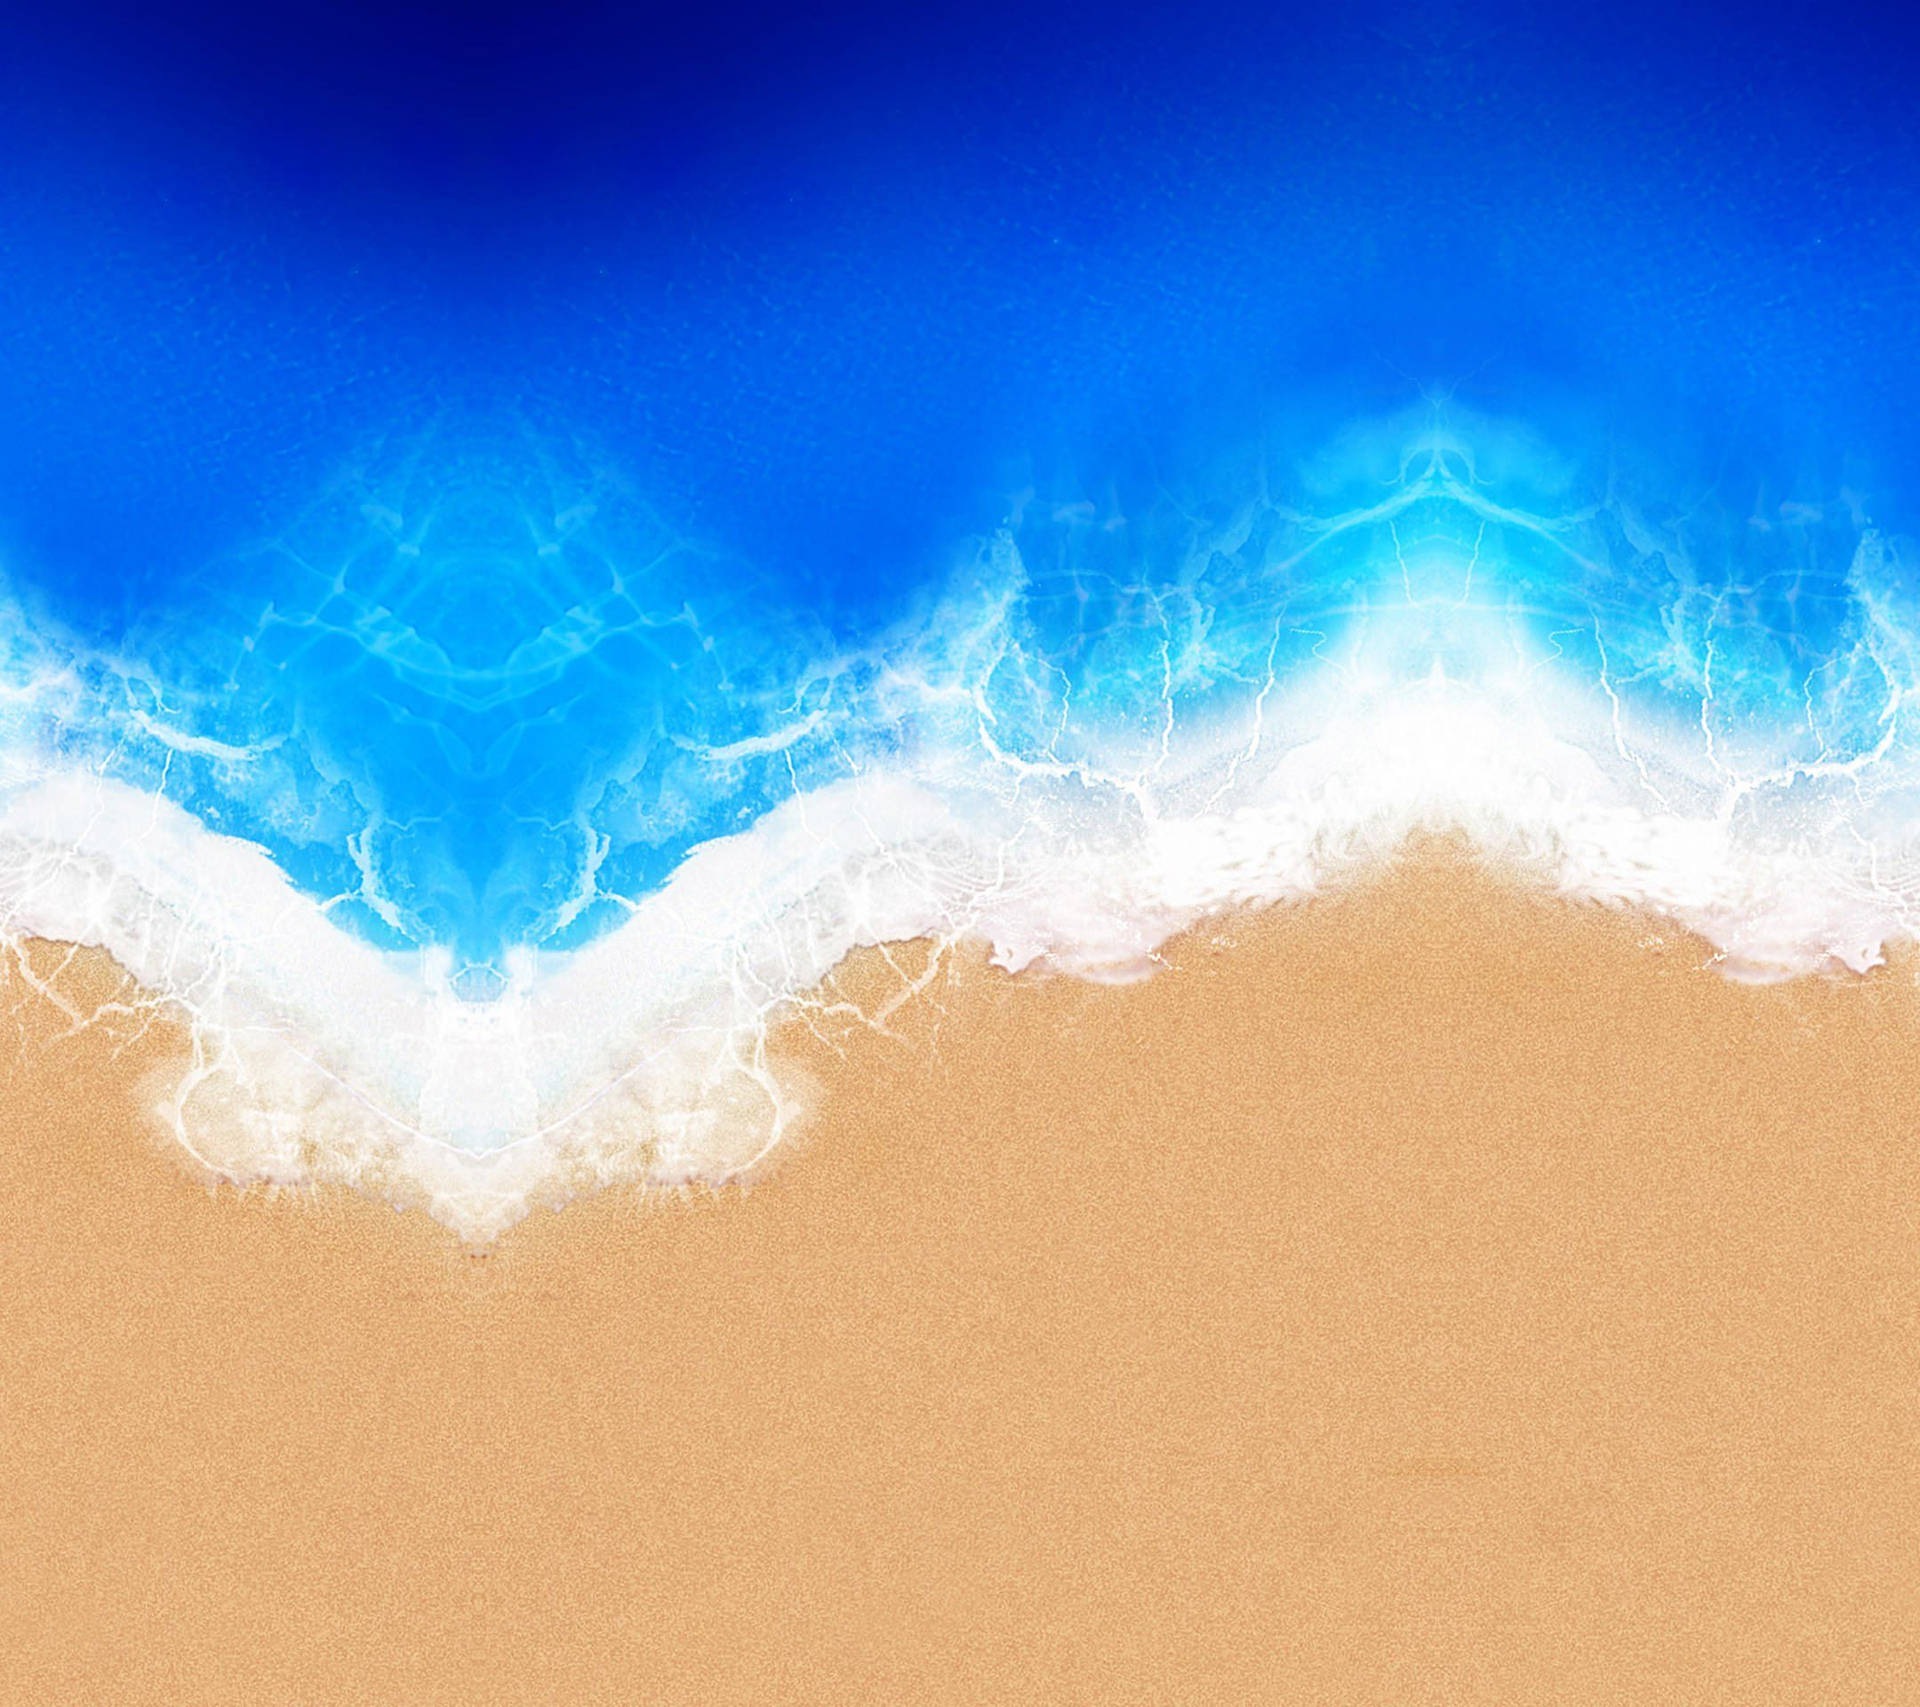 Vistaaérea En Calidad Qhd De Un Océano Azul Fondo de pantalla